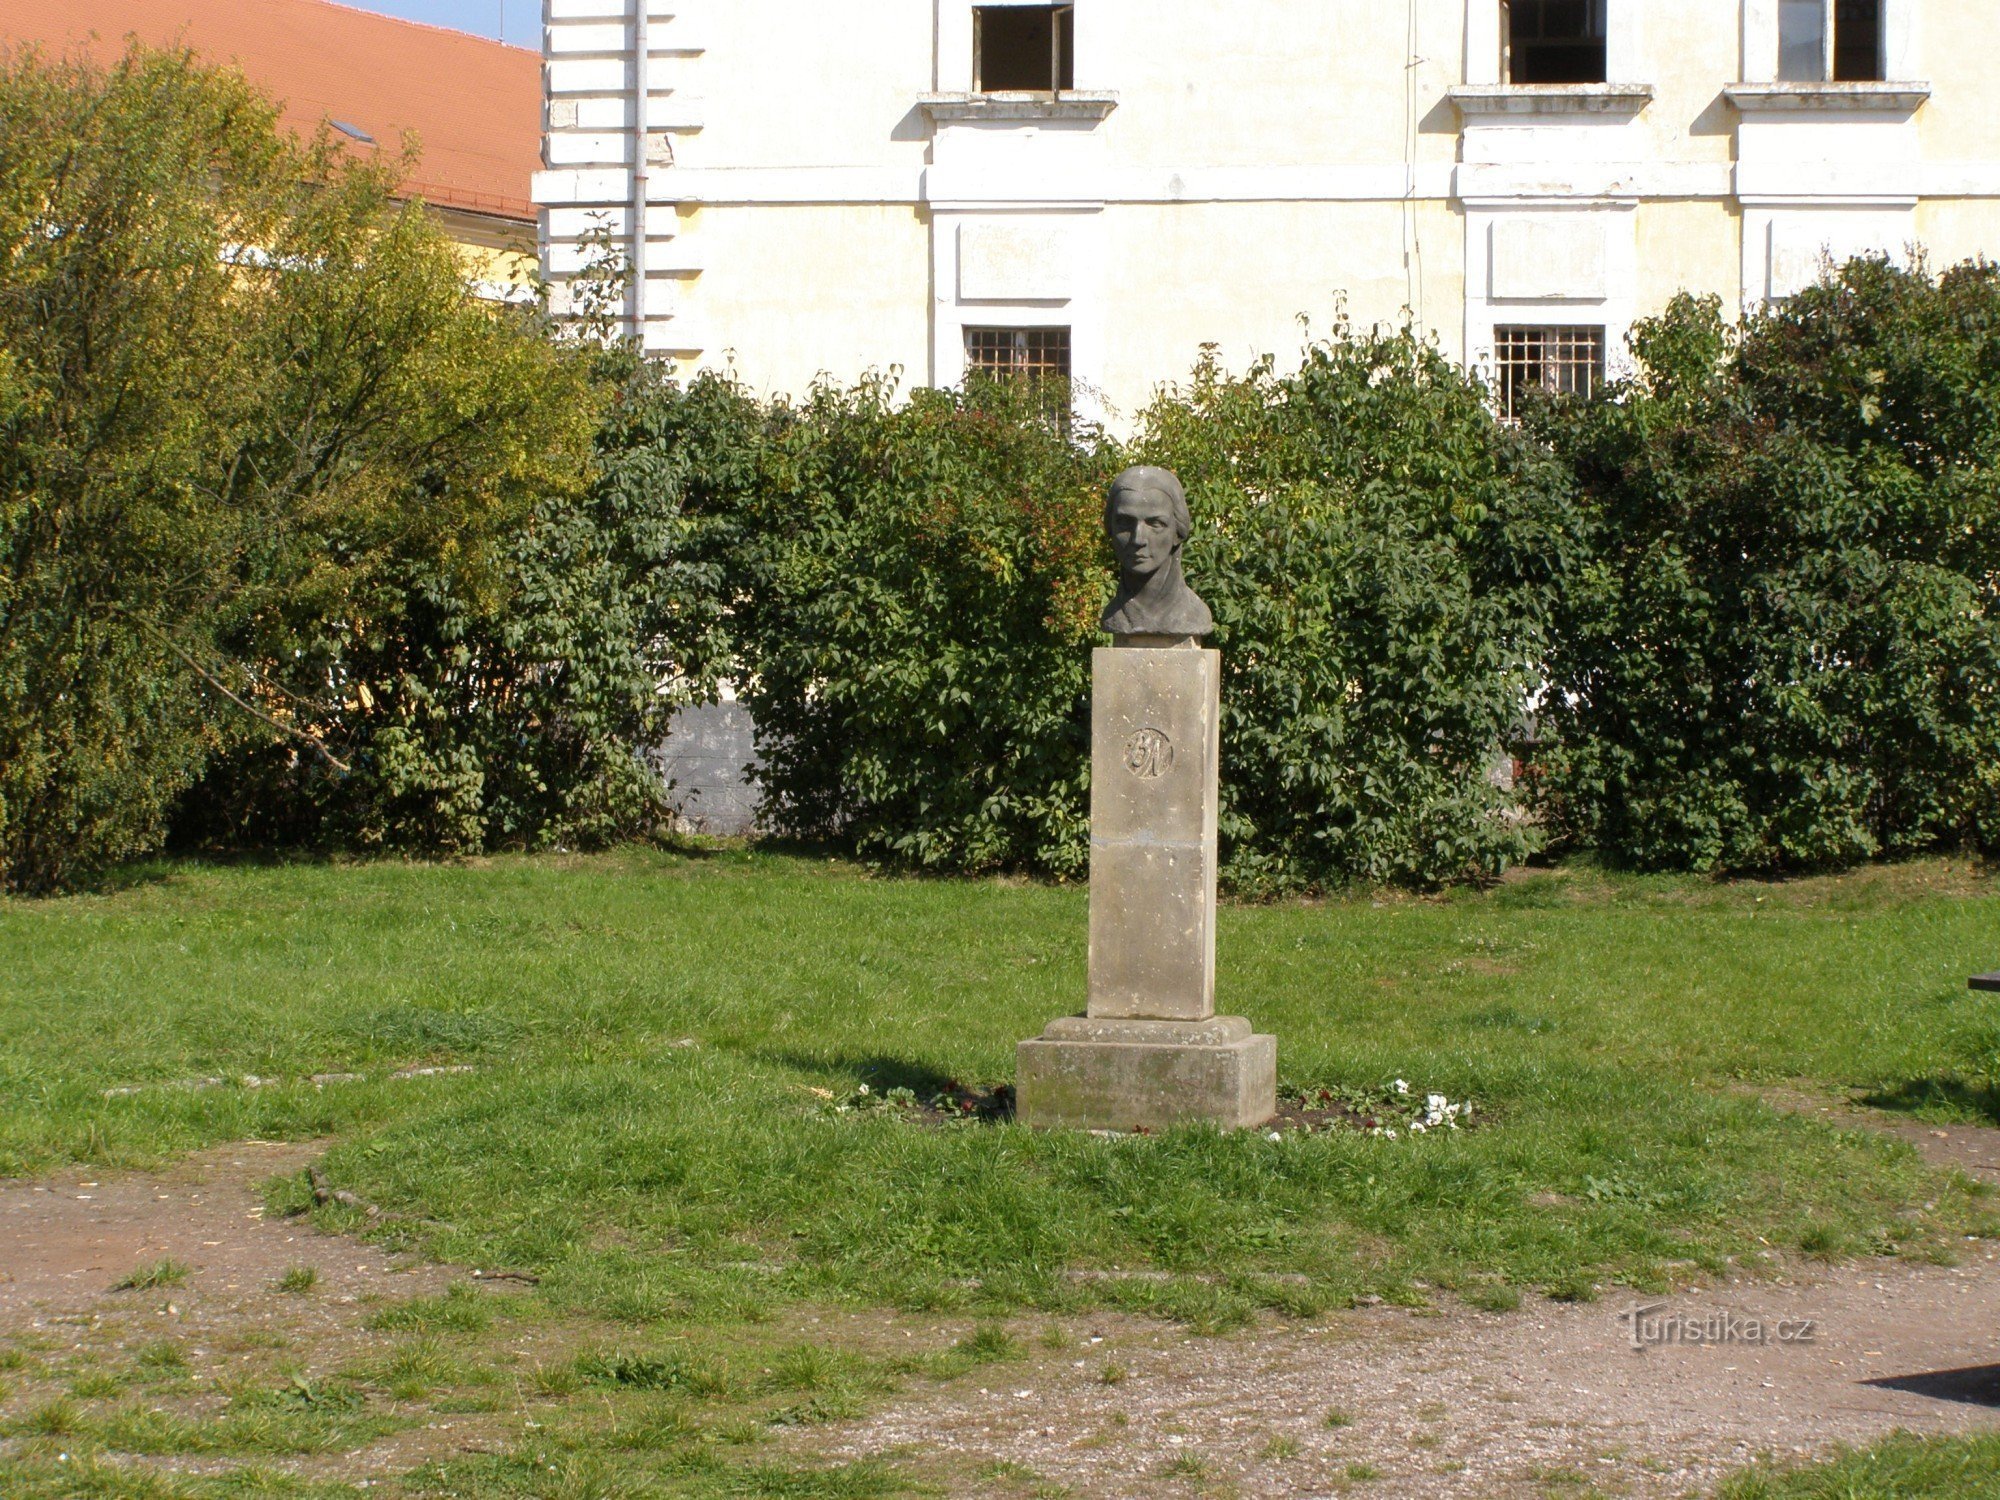 Josefov - pomnik Bożeny Němcová